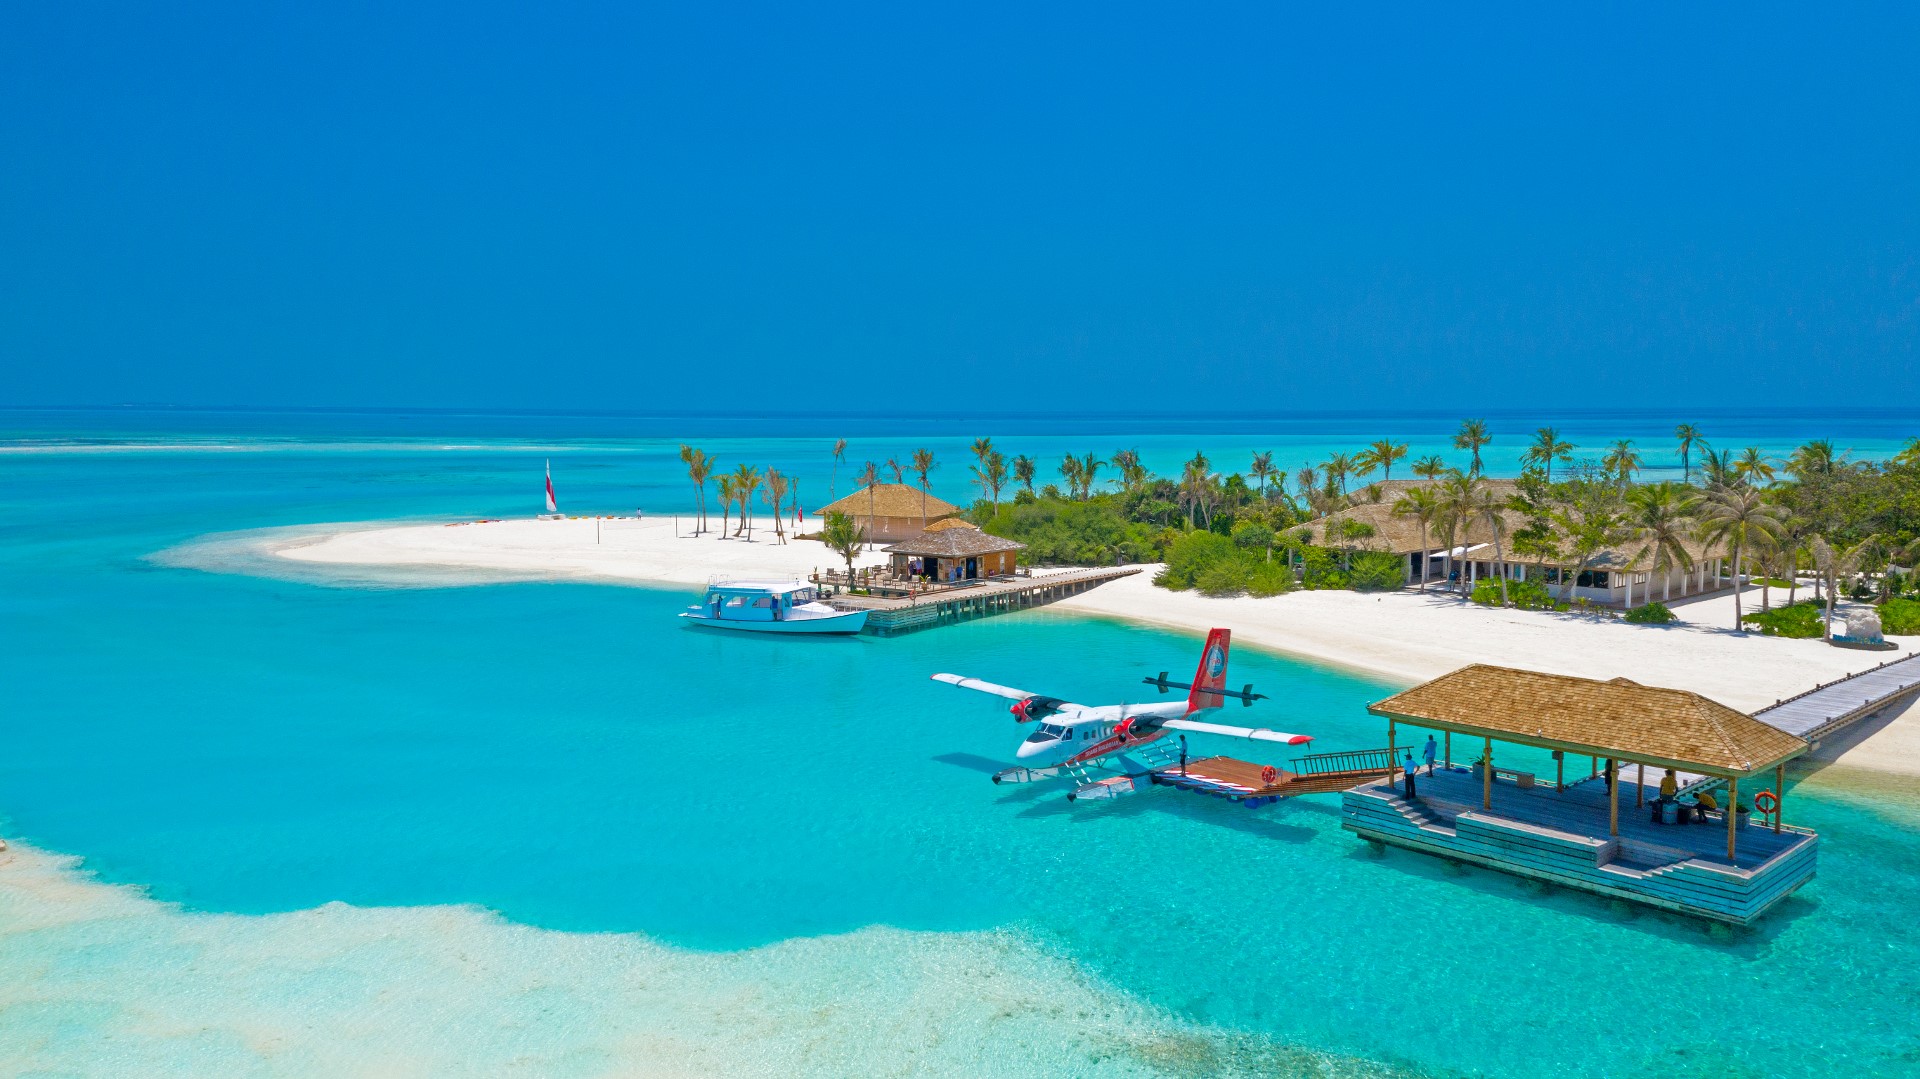 Innahura Maldives Resort – lugn och ro med aktiviteter för hela familjen